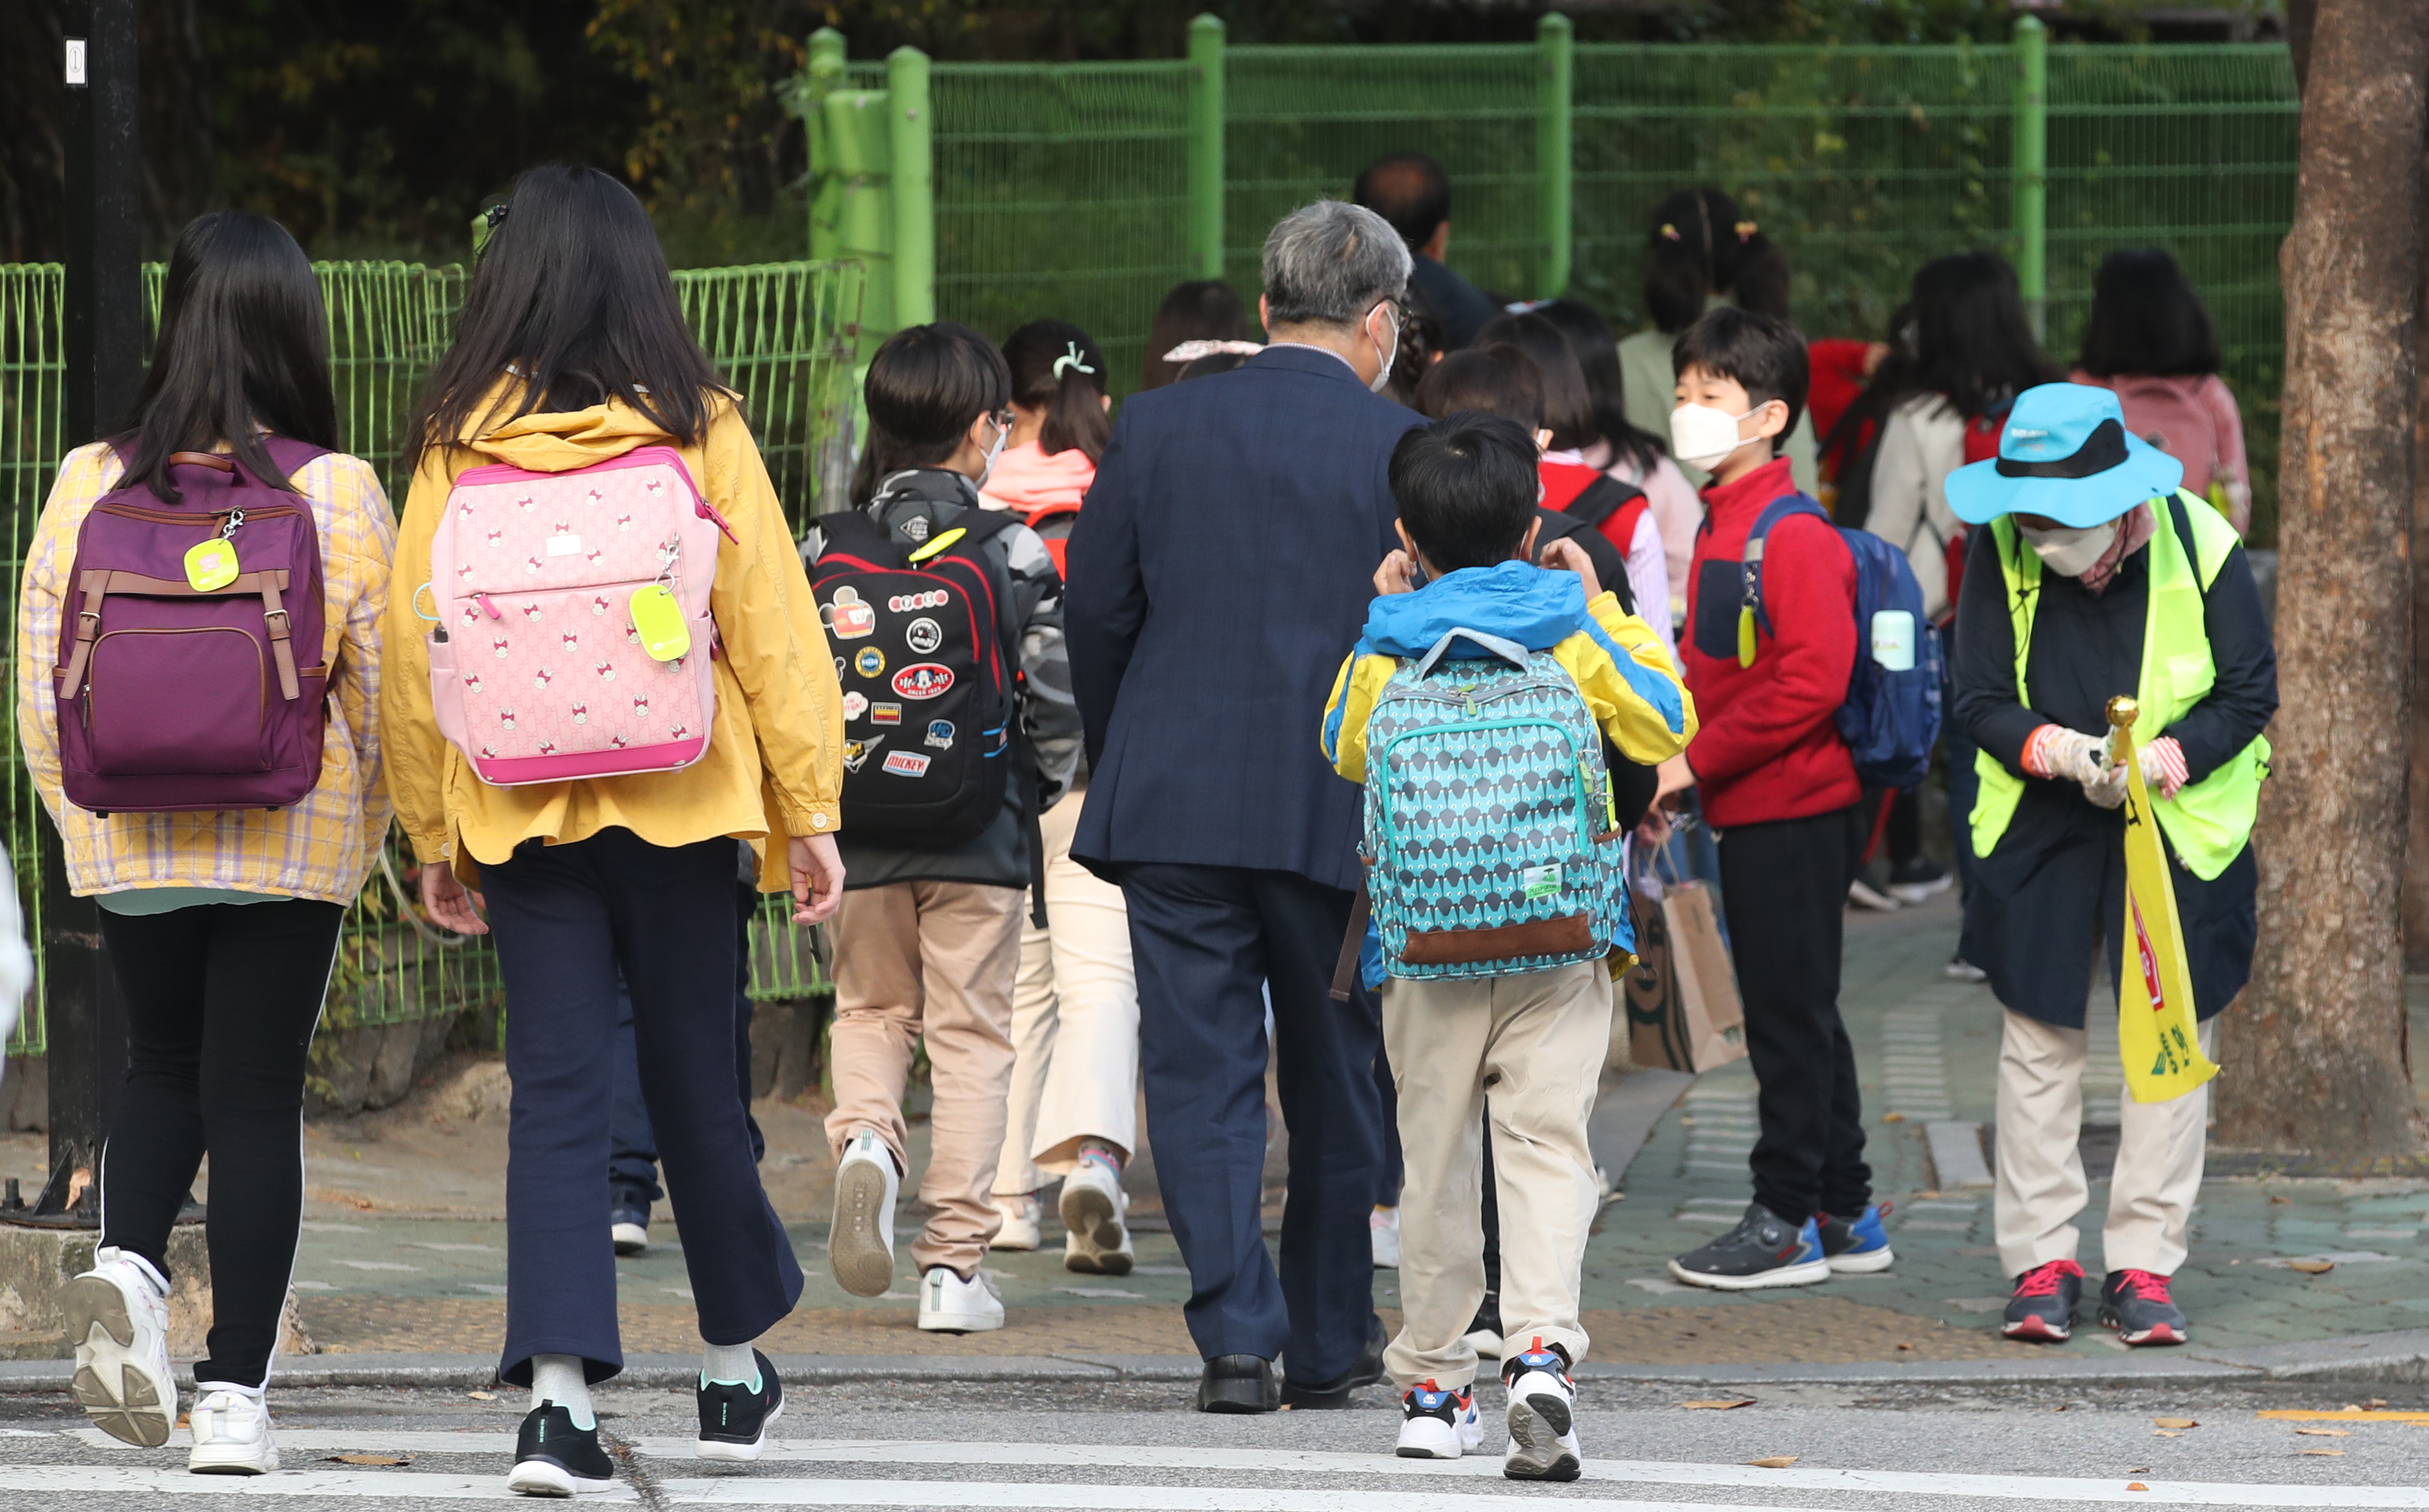 사회적 거리두기가 1단계로 하향 조정된 가운데 12일 오전 서울 노원구에서 초등학생들이 등교를 하고 있다. 교육부는 사회적 거리두기가 1단계로 완화됨에 따라 전국의 유치원 및 초중고등학교가 오는 19일부터 등교인원을 3분의 2 이내로 늘리기로 했다. 준비기간을 거쳐 기준 완화를 전면 적용하기로 했지만 당장 등교인원을 늘리는 학교도 적지 않을 전망이다. 2020.10.12뉴스1